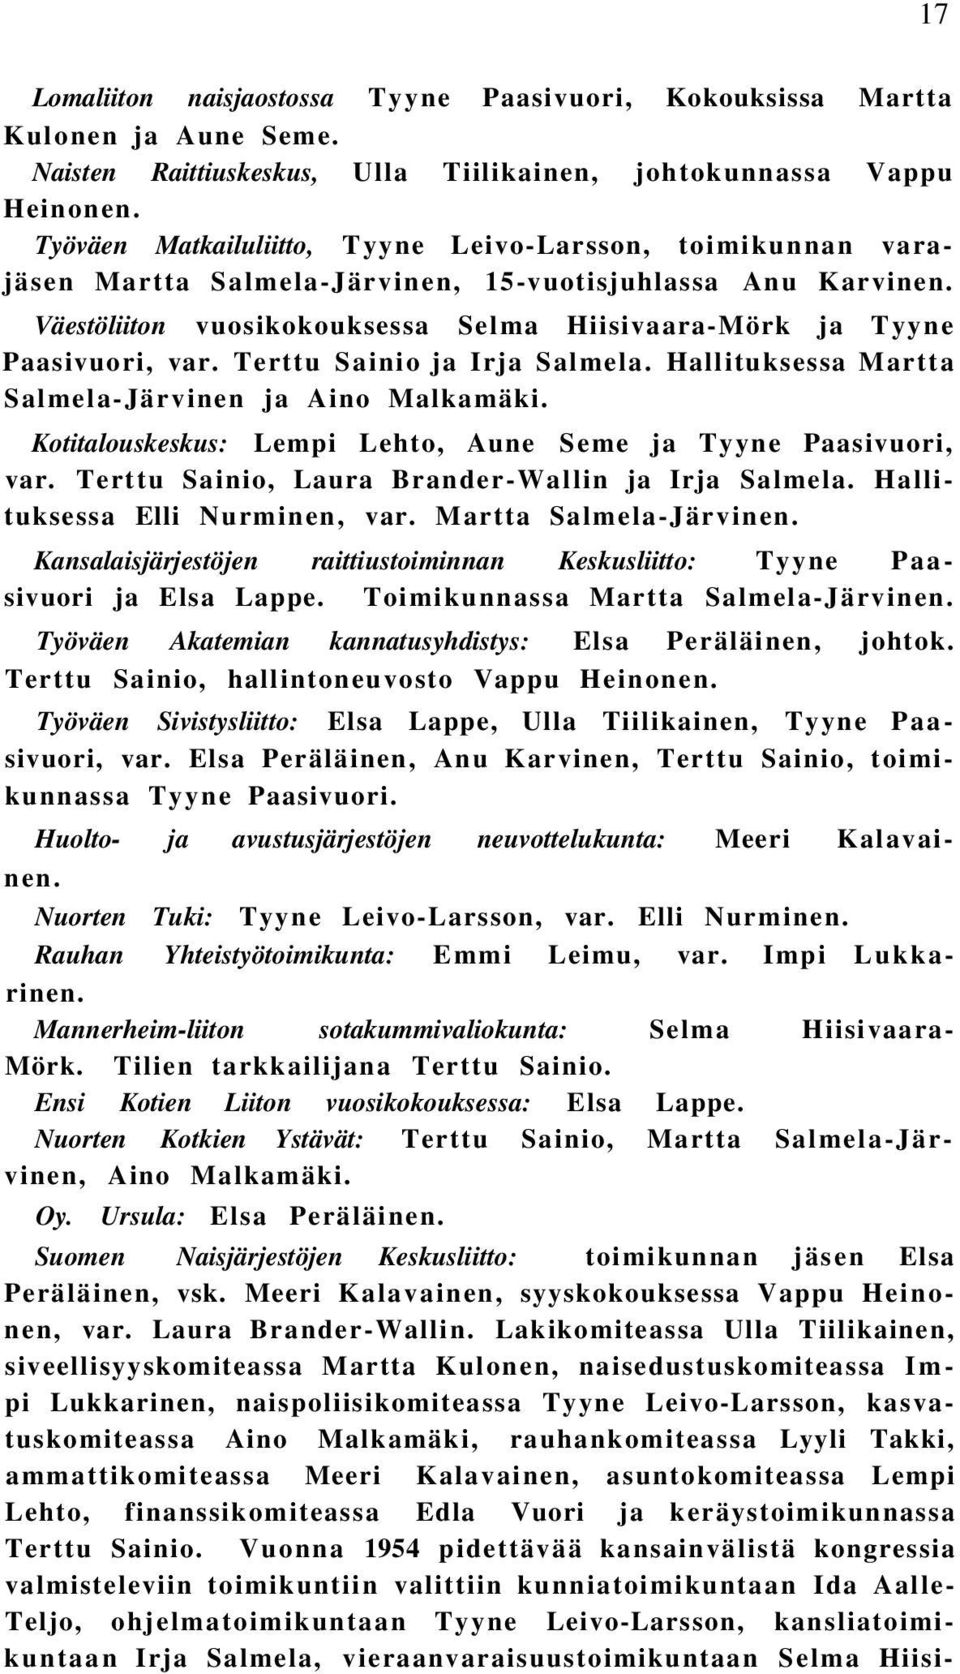 Väestöliiton vuosikokouksessa Selma Hiisivaara-Mörk ja Tyyne Paasivuori, var. Terttu Sainio ja Irja Salmela. Hallituksessa Martta Salmela-Järvinen ja Aino Malkamäki.